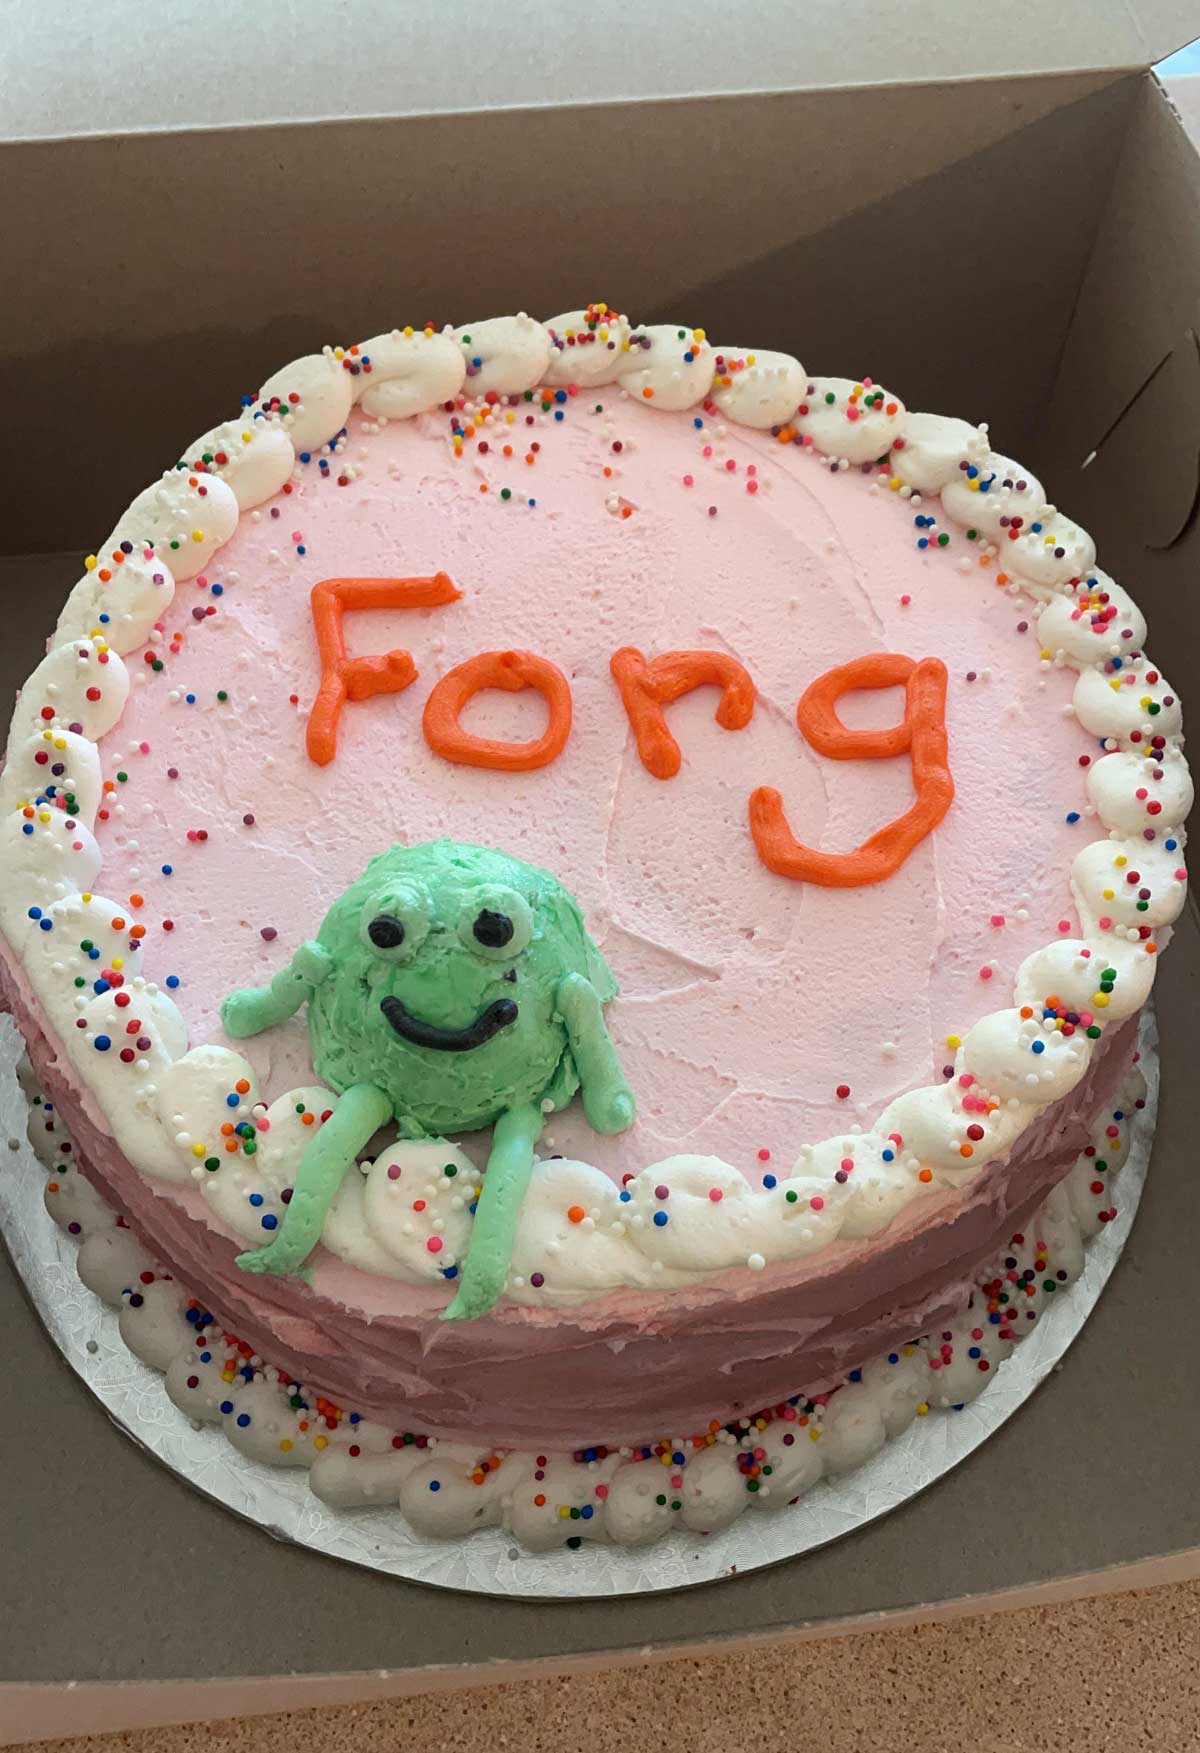 Got my Forg birthday cake today!